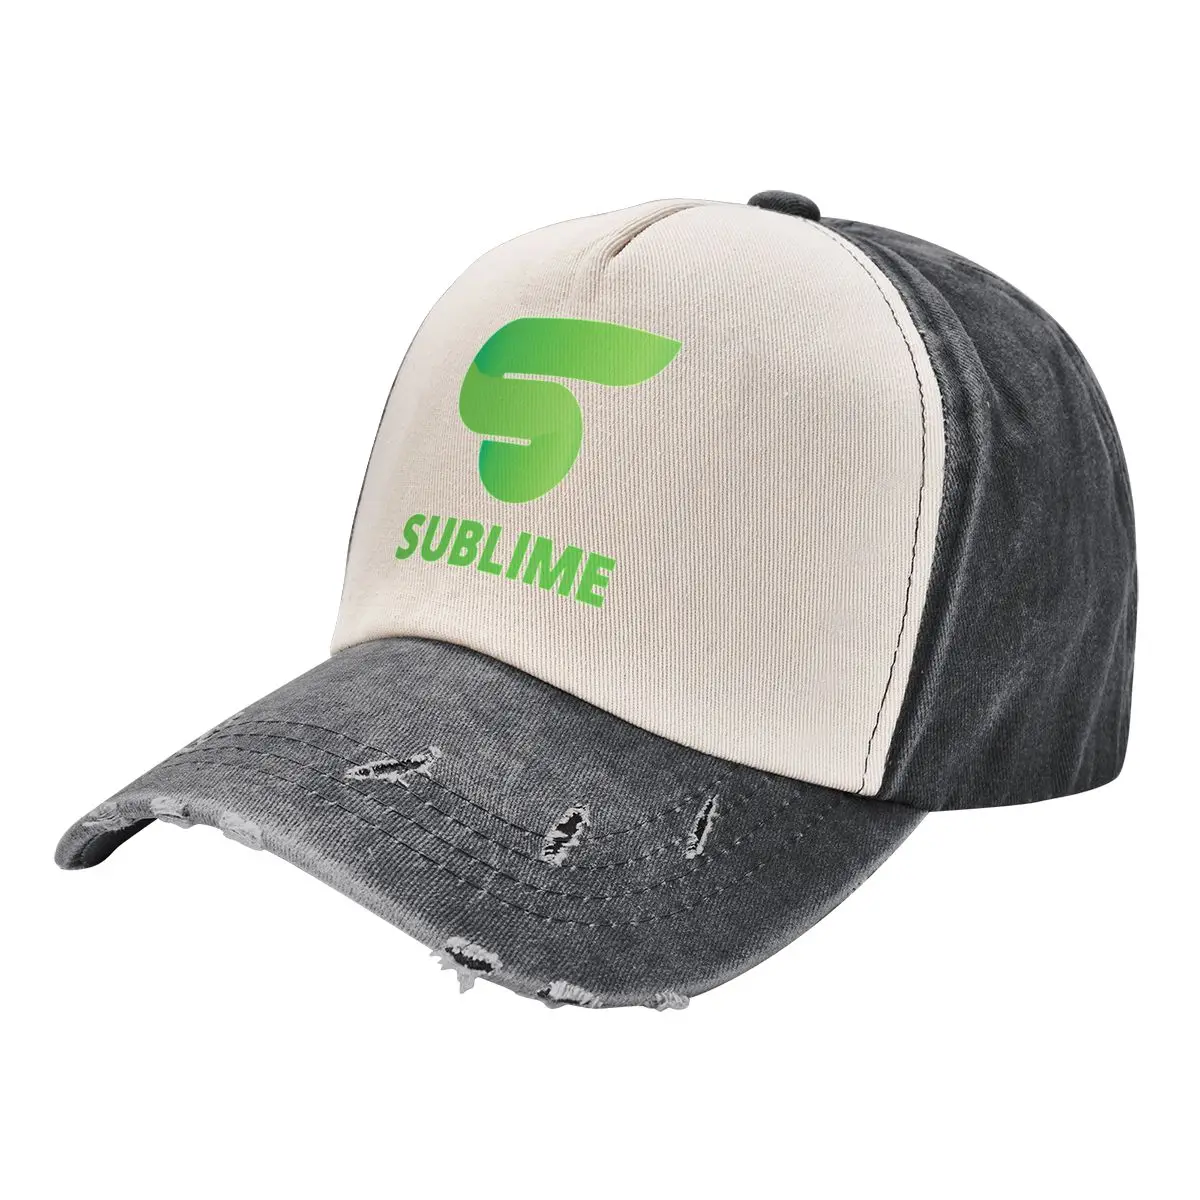 

Sublime (Logo + Name Only) Baseball Cap Hat Man For The Sun Sunhat Women Men's